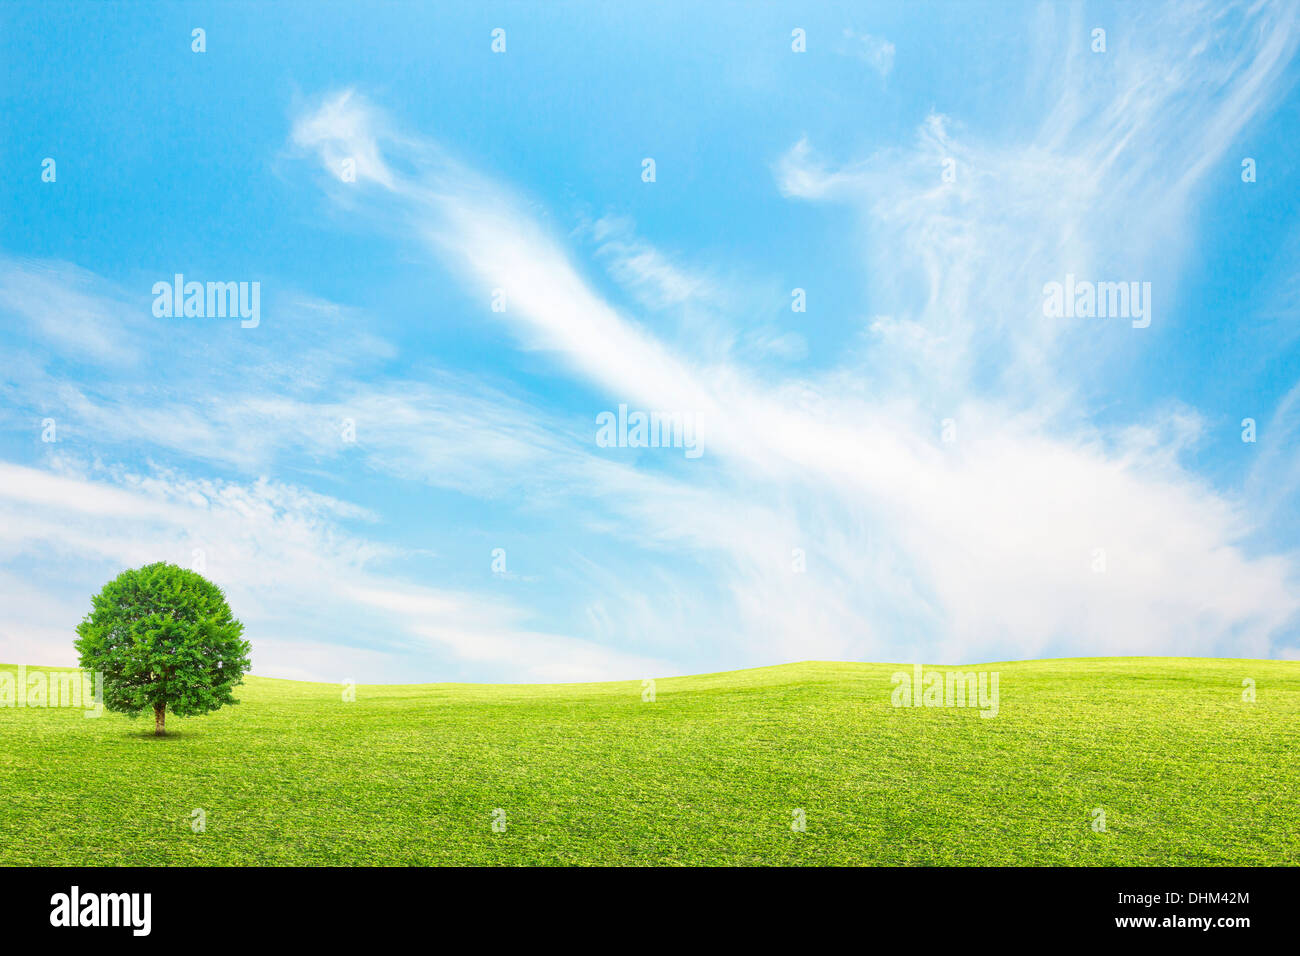 Champ vert et arbre avec ciel bleu et nuages Banque D'Images